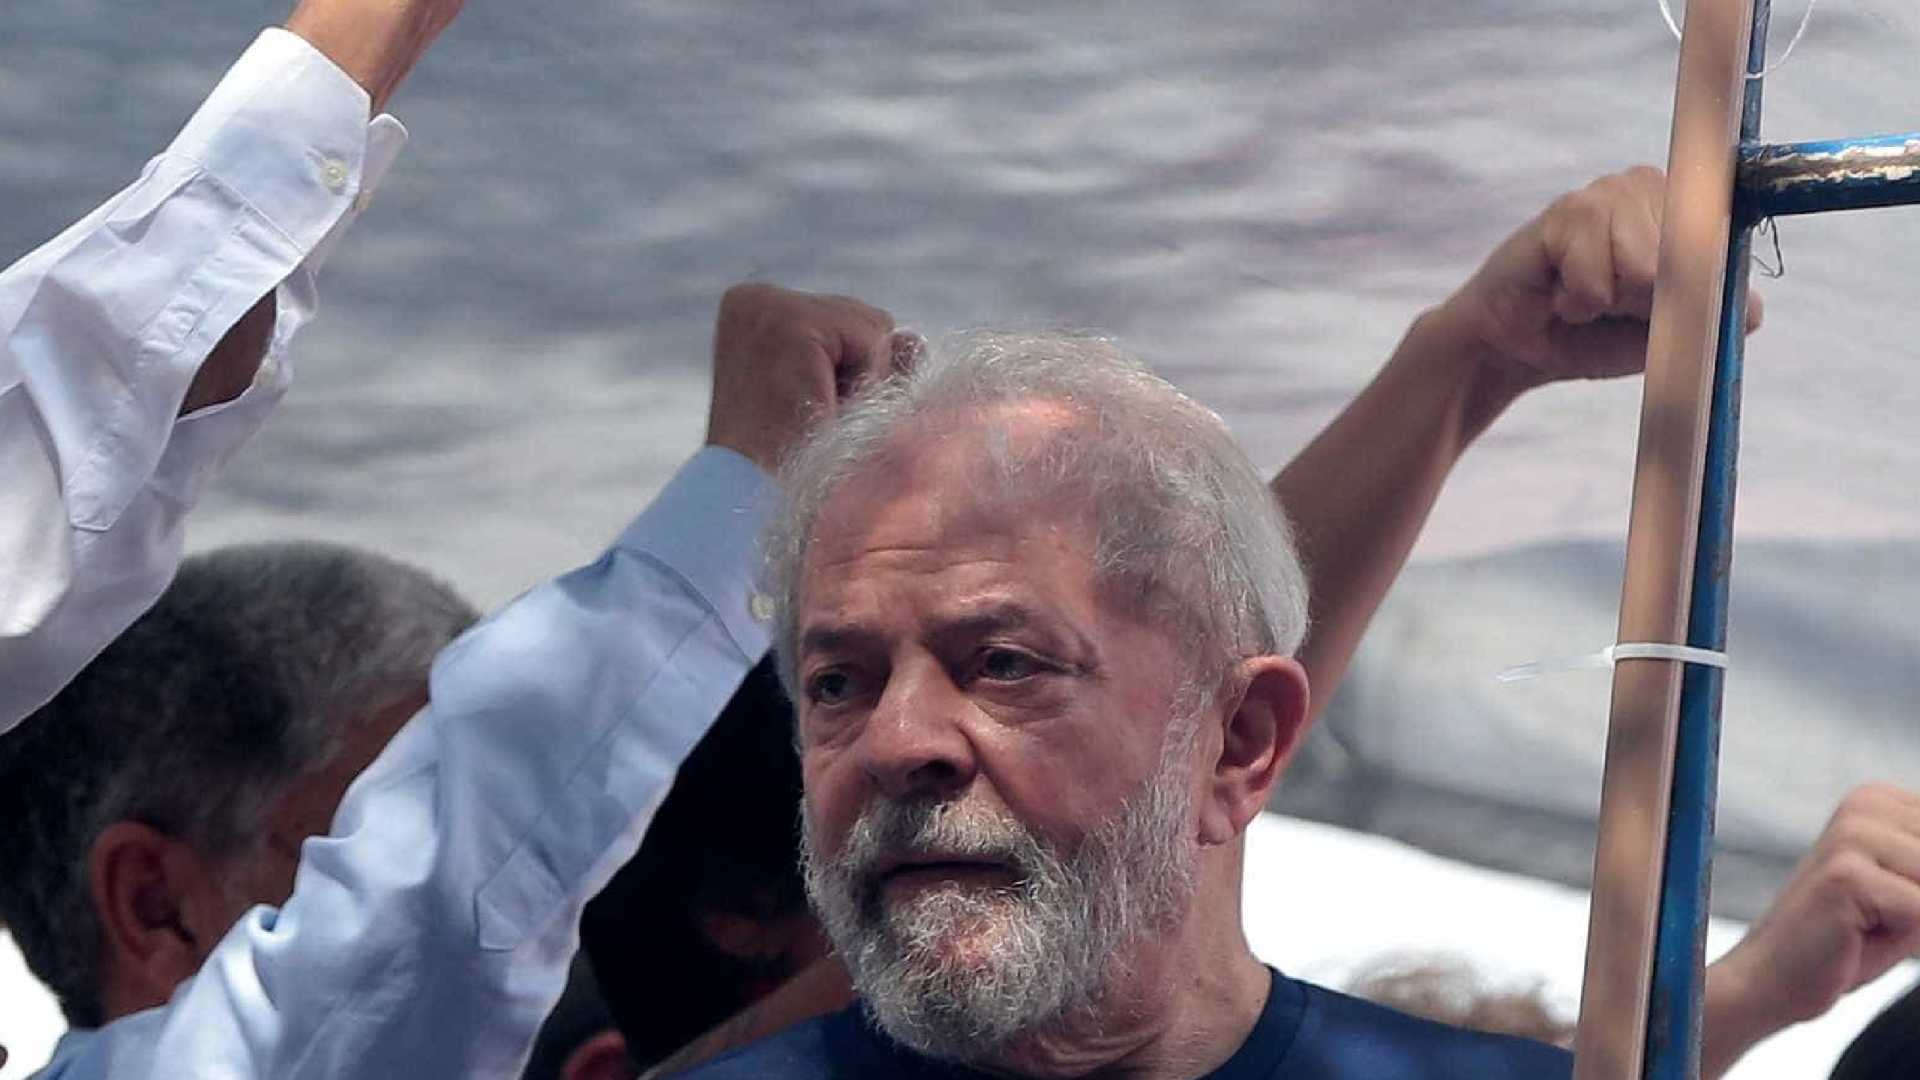 A três dias da eleição, procuradoria pede nova condenação de Lula